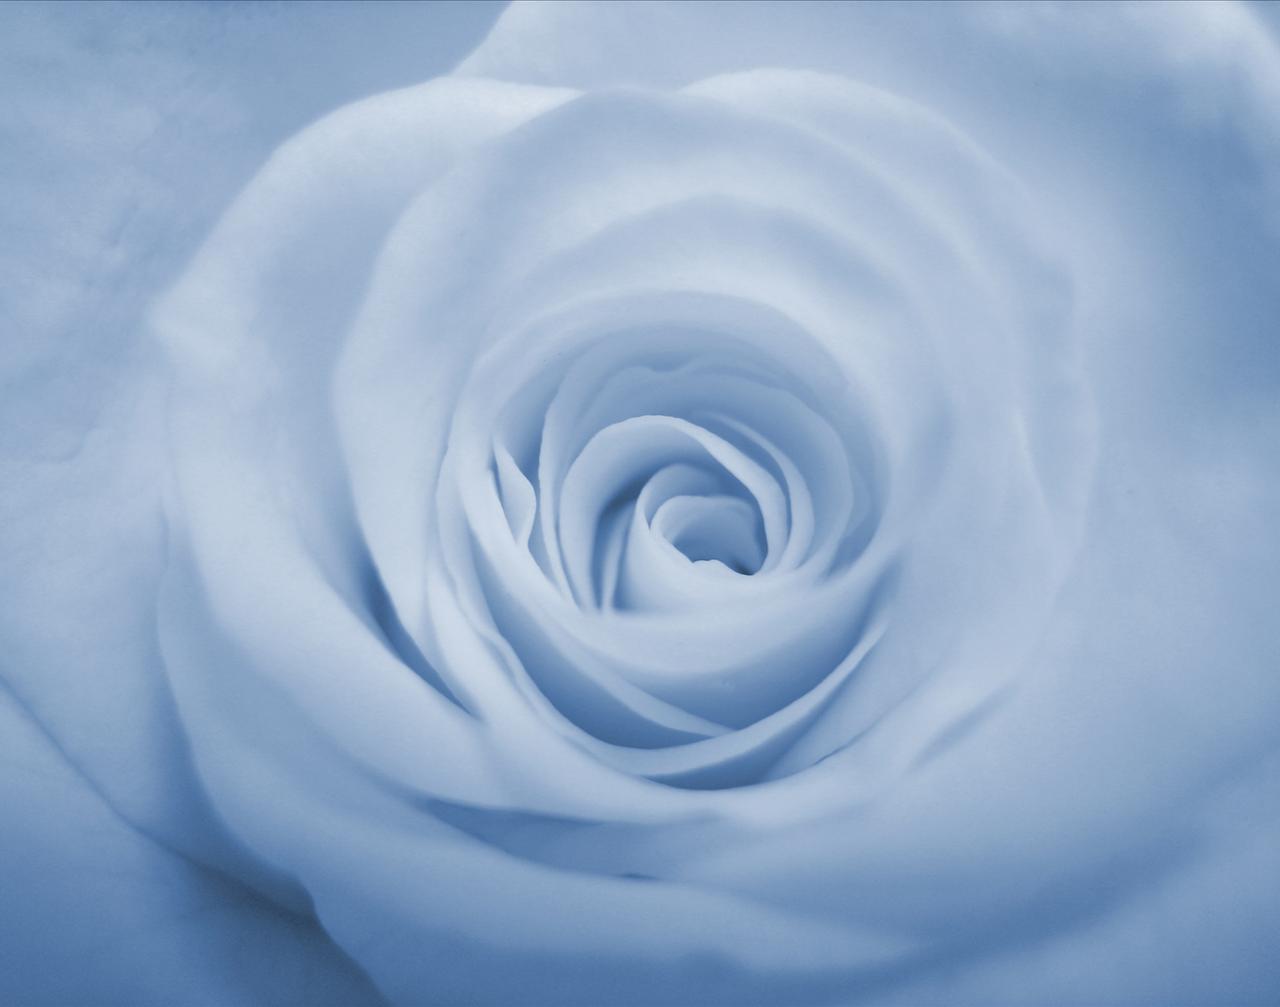 Light Blue Rose Background